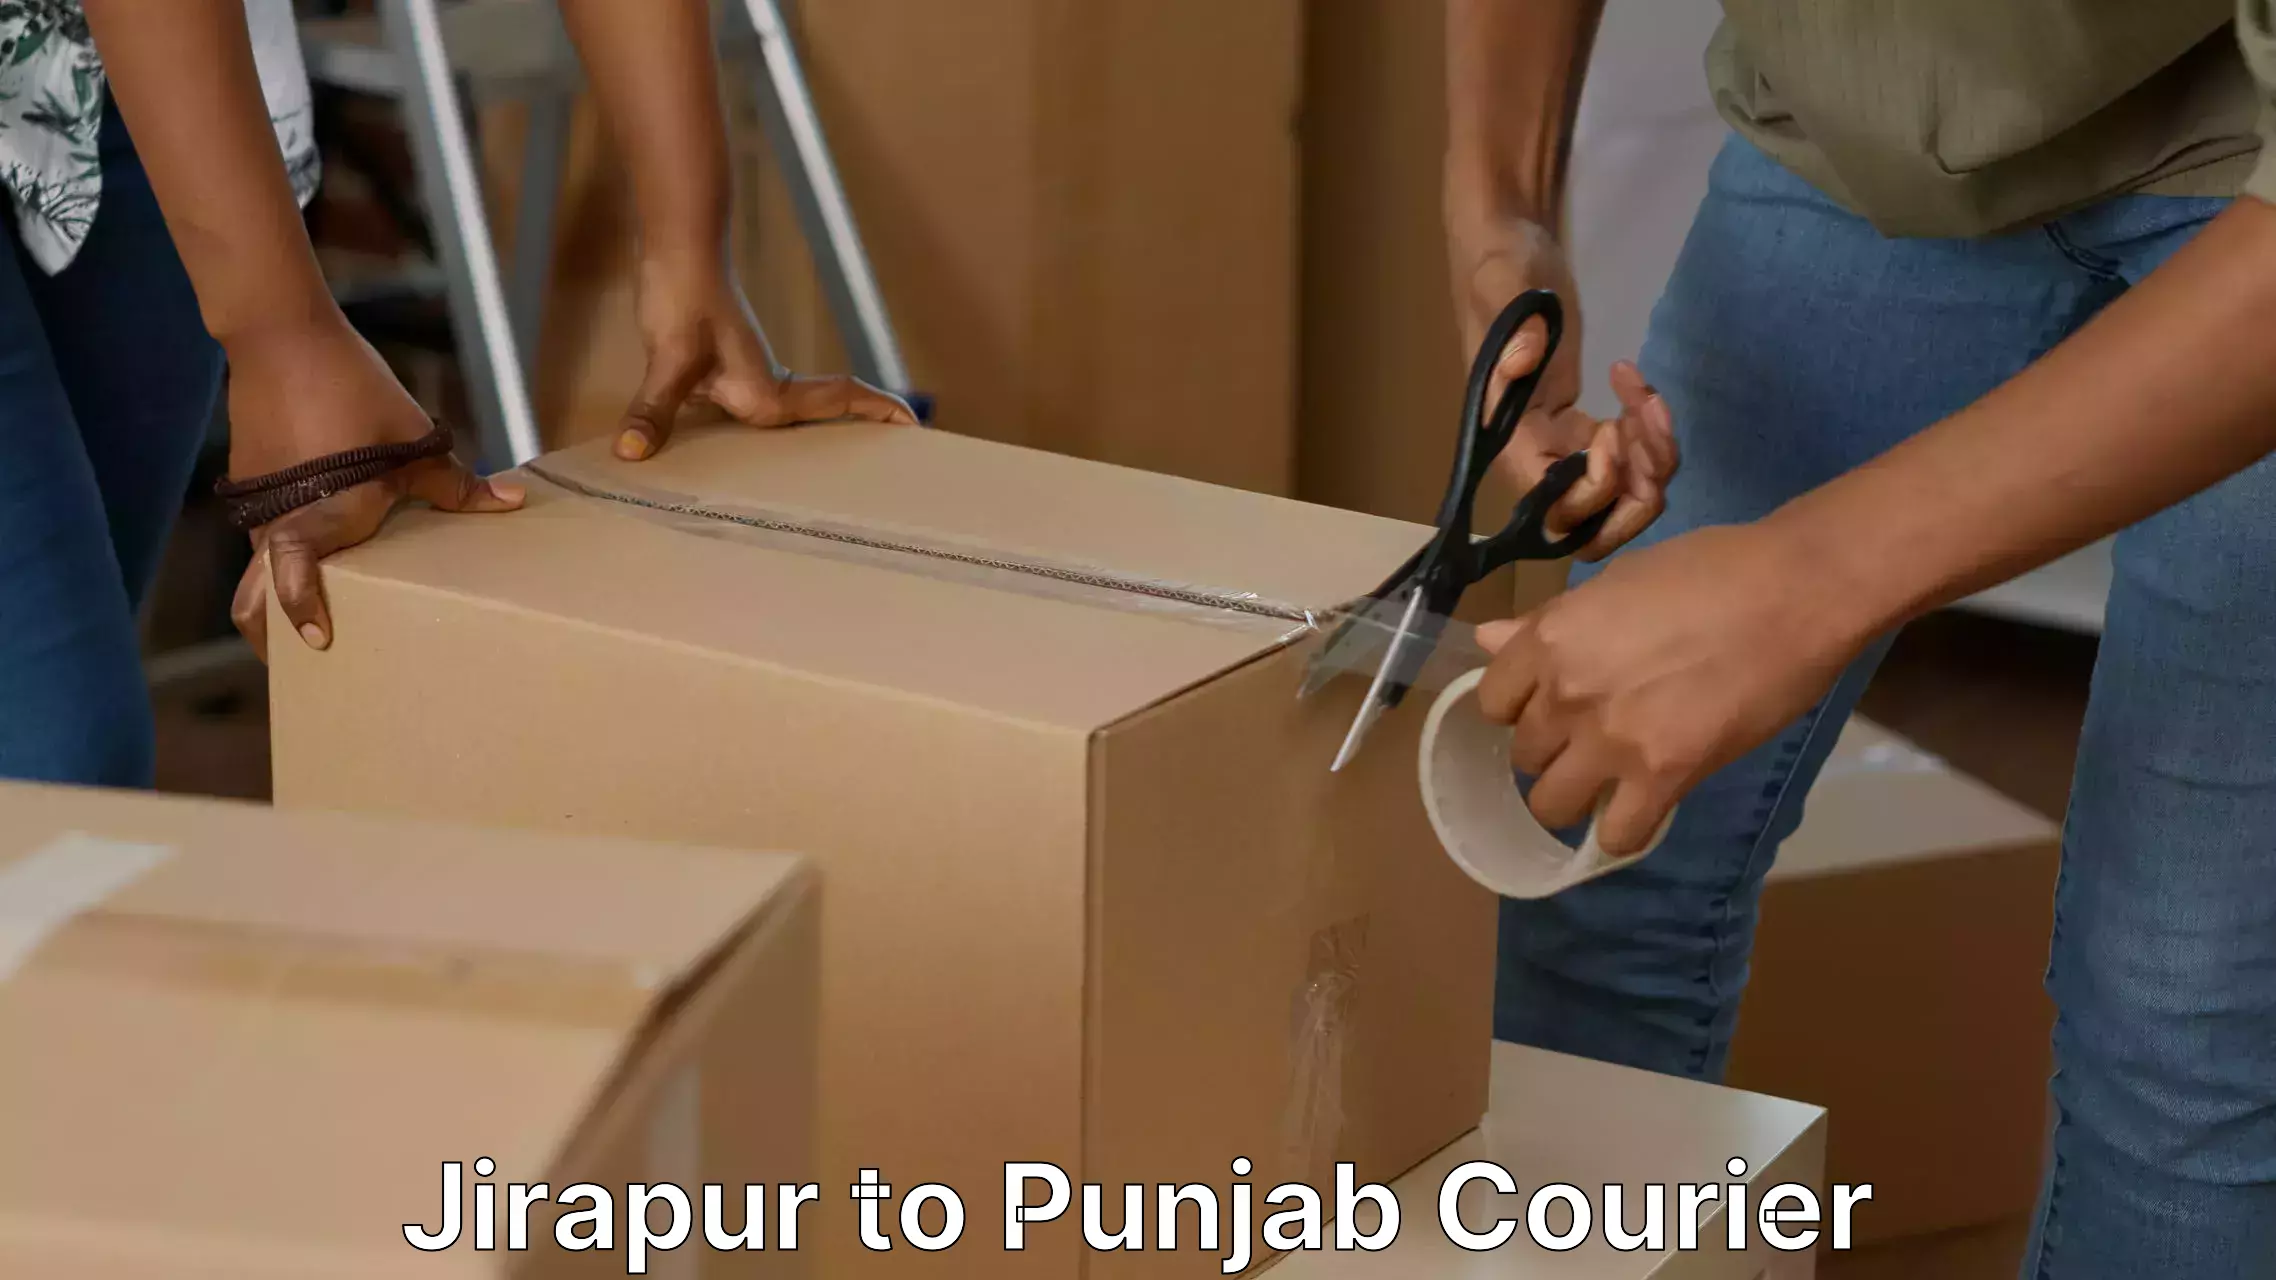 Skilled furniture transporters Jirapur to Punjab